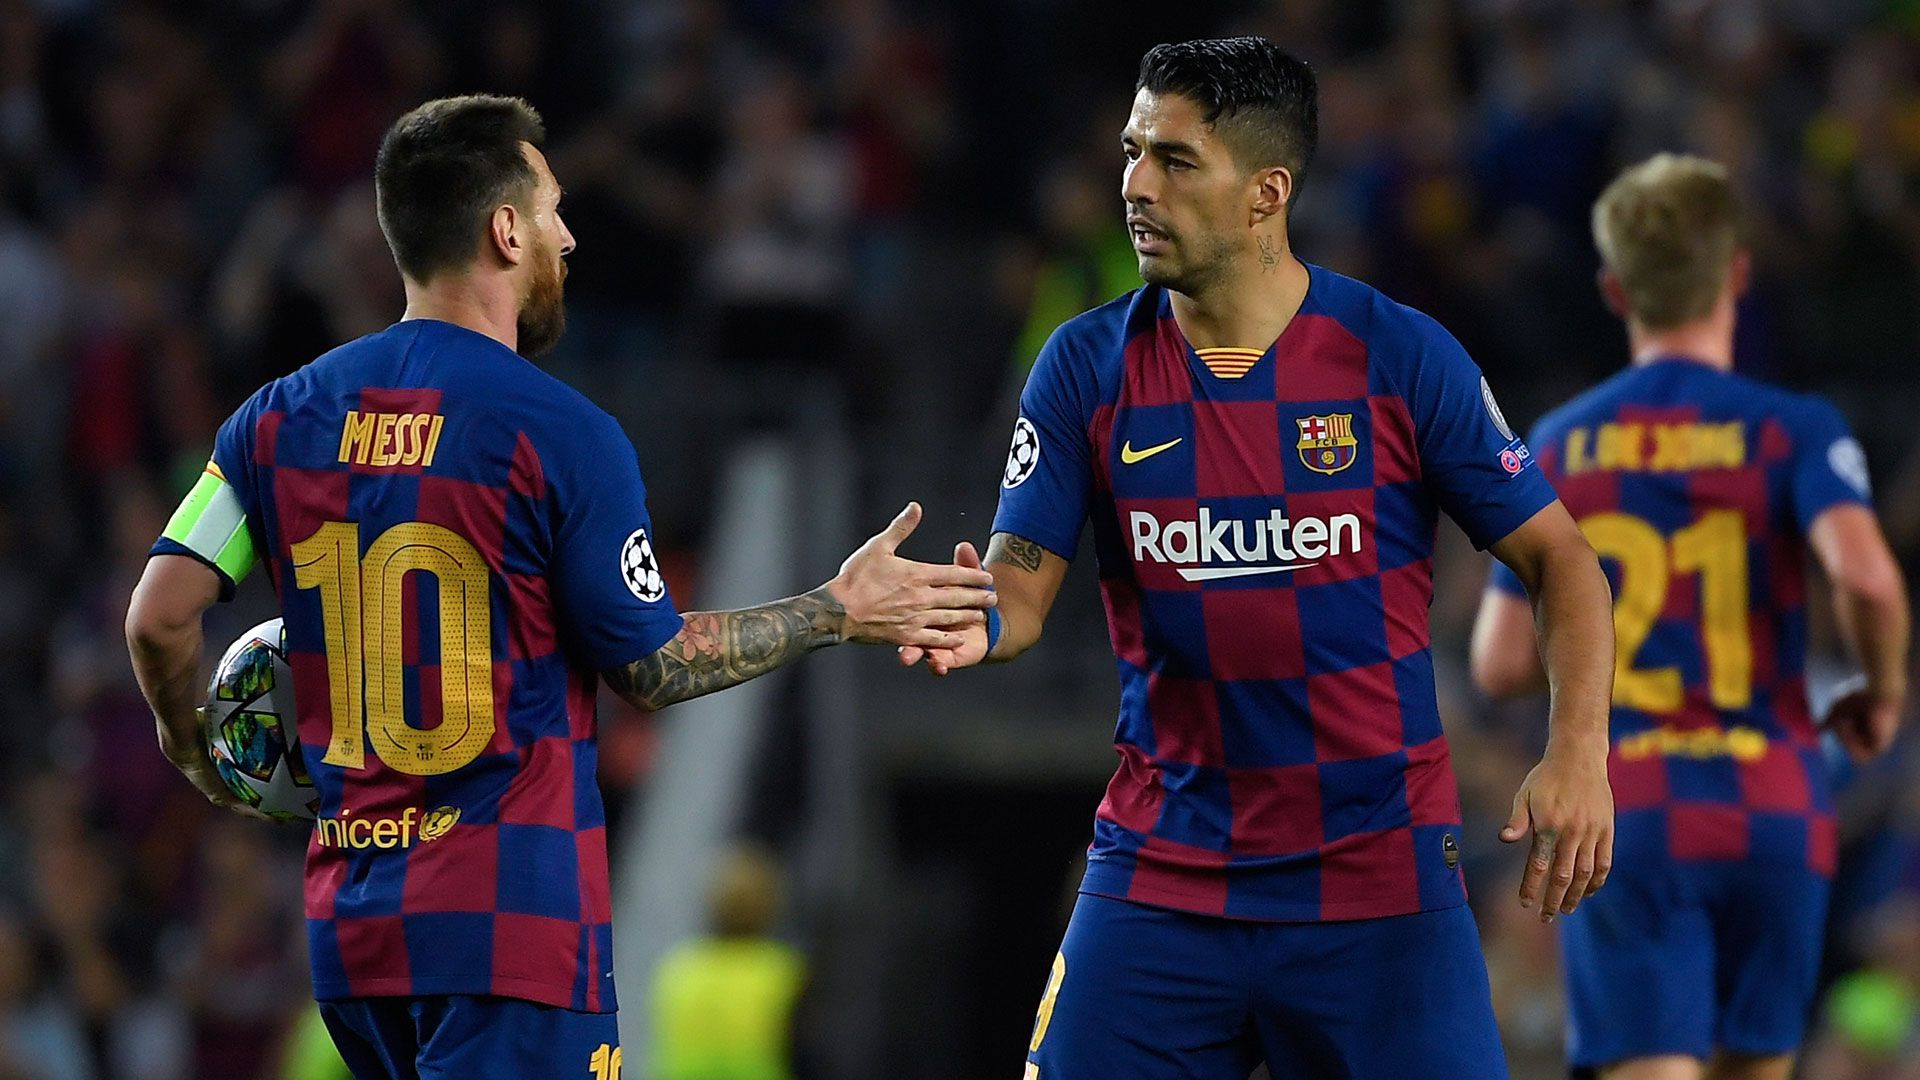 El Barcelona de Lionel Messi va por una nueva victoria en la liga de España (Photo by LLUIS GENE / AFP)